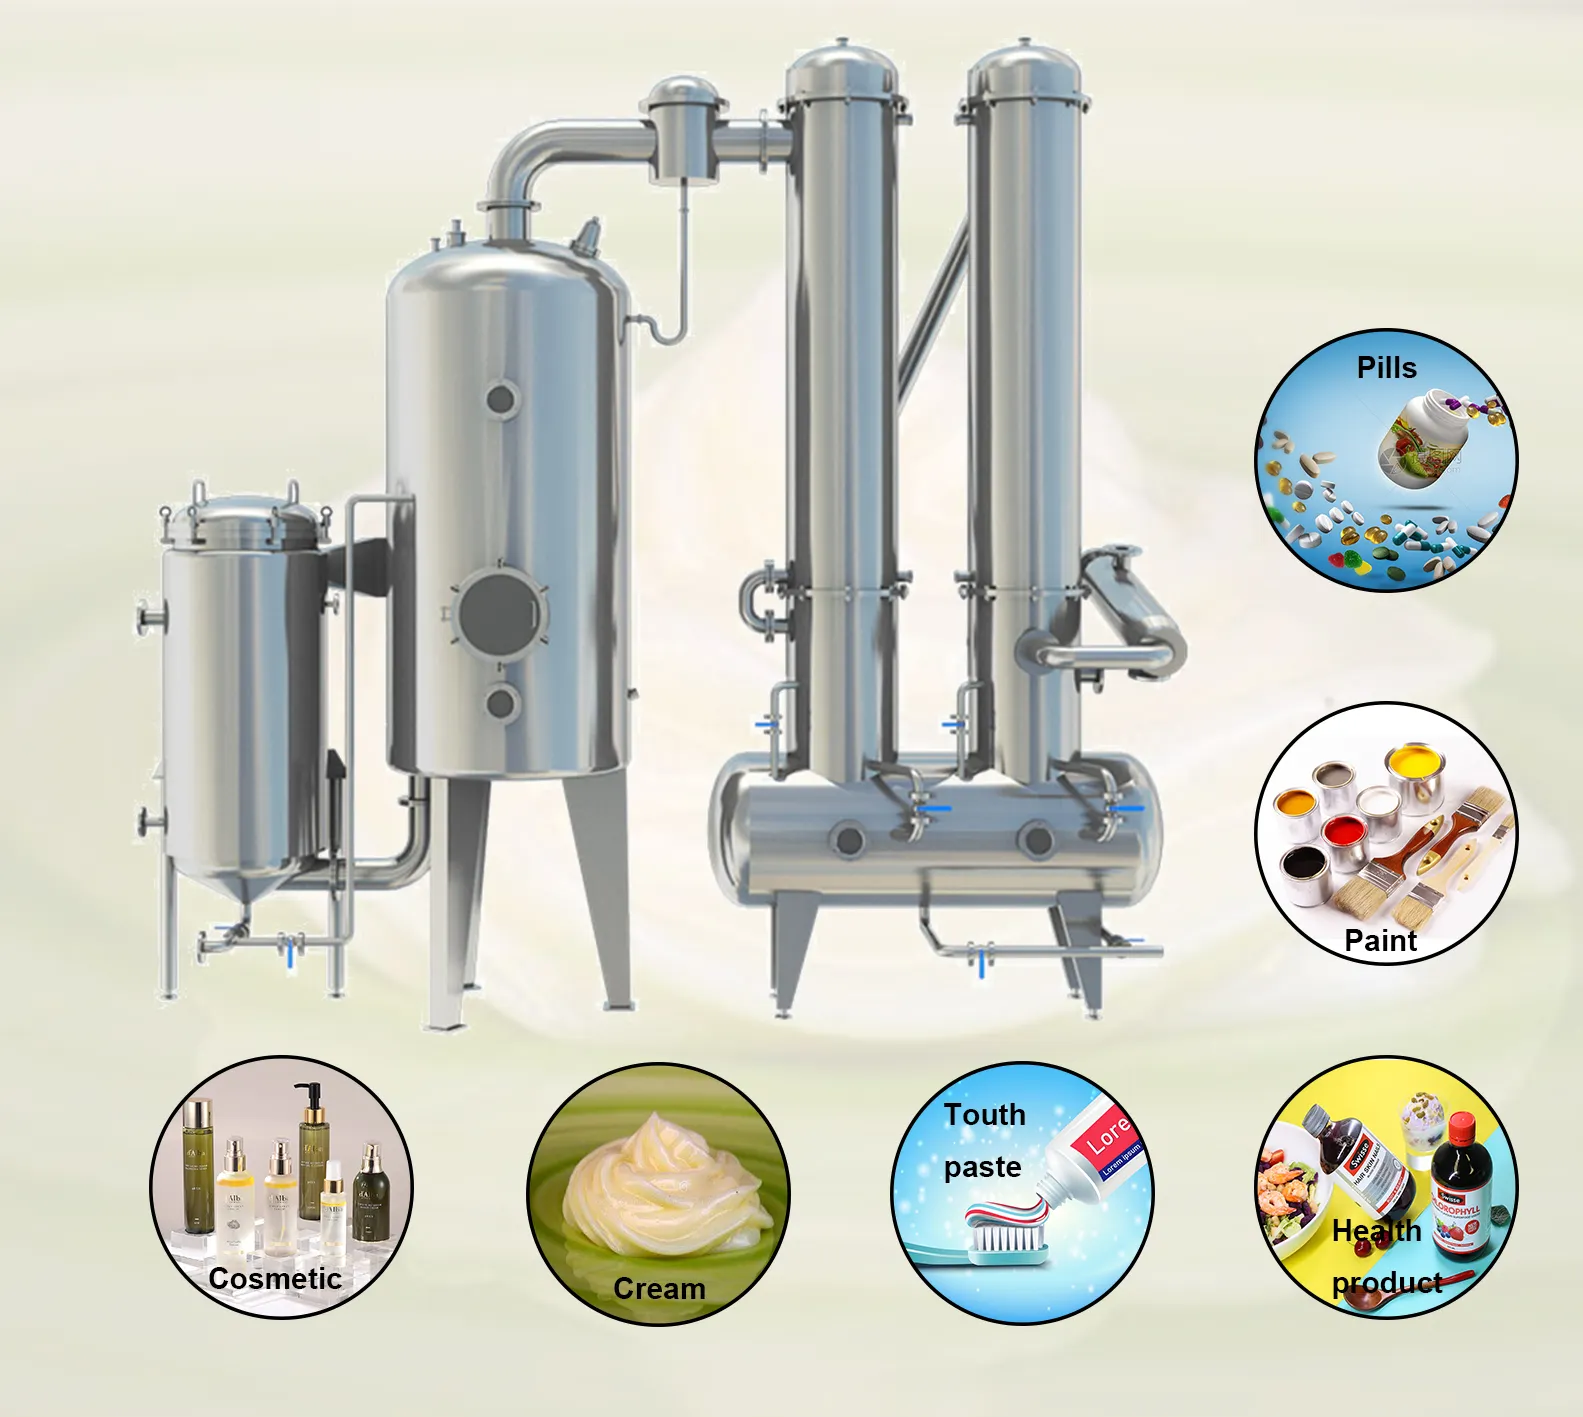 産業用mvr流下膜蒸発器システムと小型充填膜蒸発器